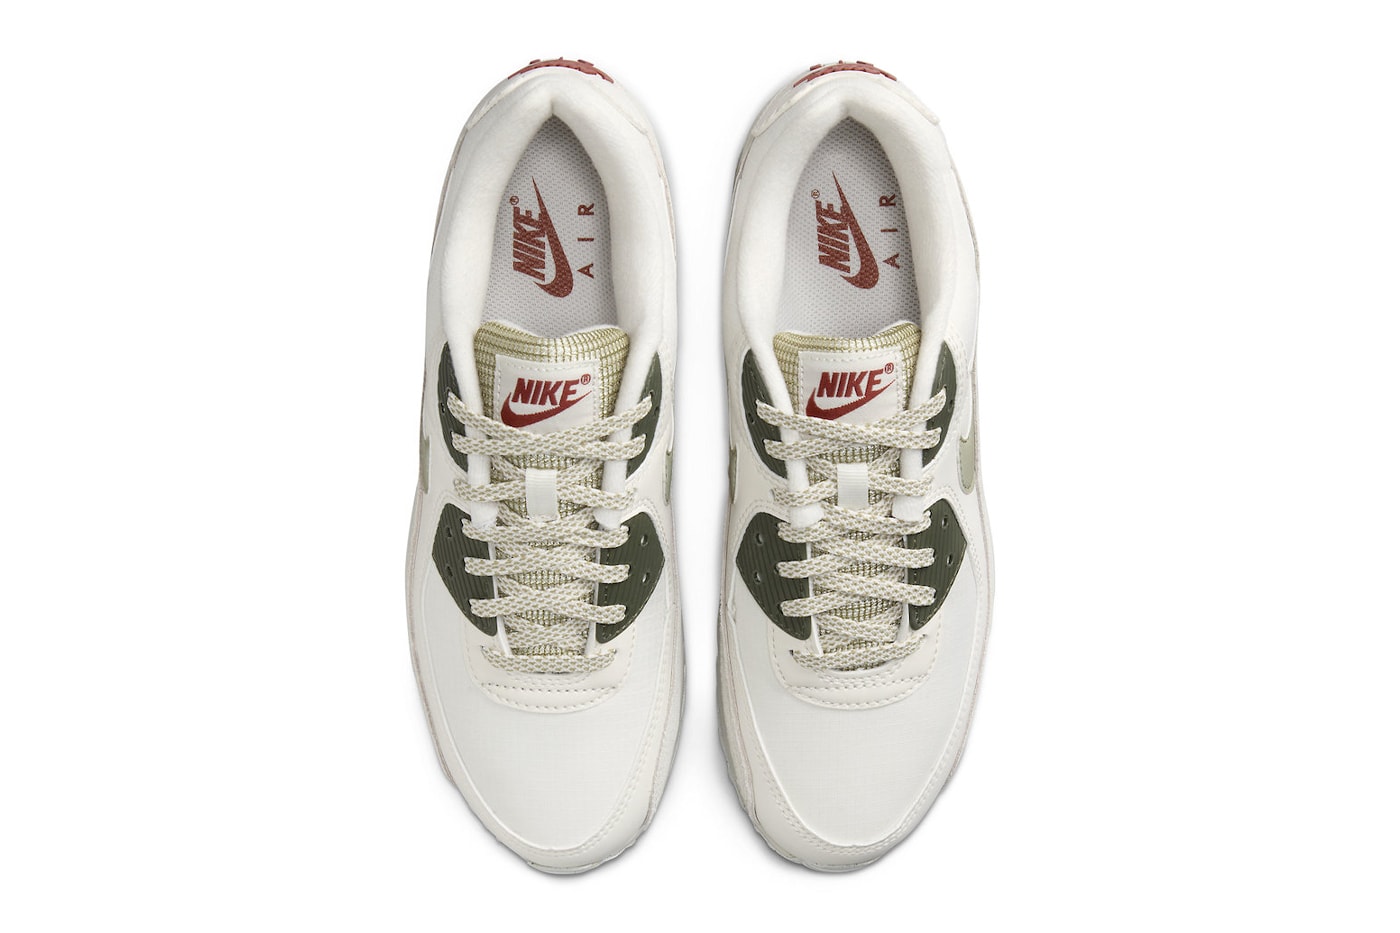 ナイキからミリタリー服にも合わせやすそうなエアマックス90が登場 Nike Air Max 90 Arrives in "Phantom/Neutral Olive" FB9657-002 Phantom/Neutral Olive-Light Bone running shoes sneakers swoosh